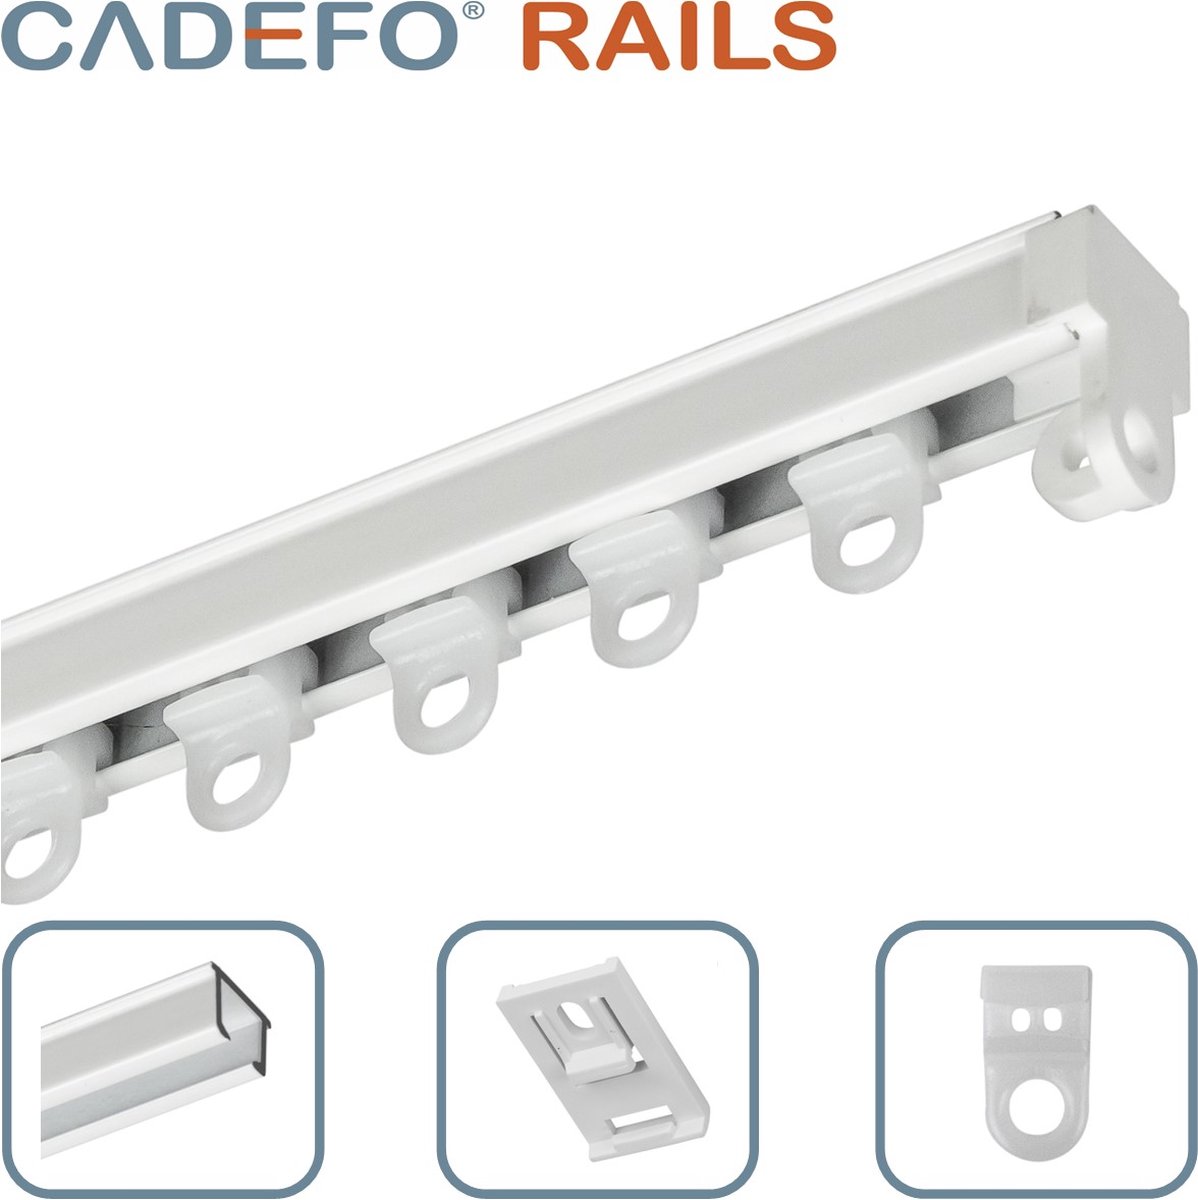 CADEFO RAILS (101 - 150 cm) Gordijnrails - Compleet op maat! - UIT 1 STUK - Leverbaar tot 6 meter - Plafondbevestiging - Lengte 150 cm - 1,5 meter